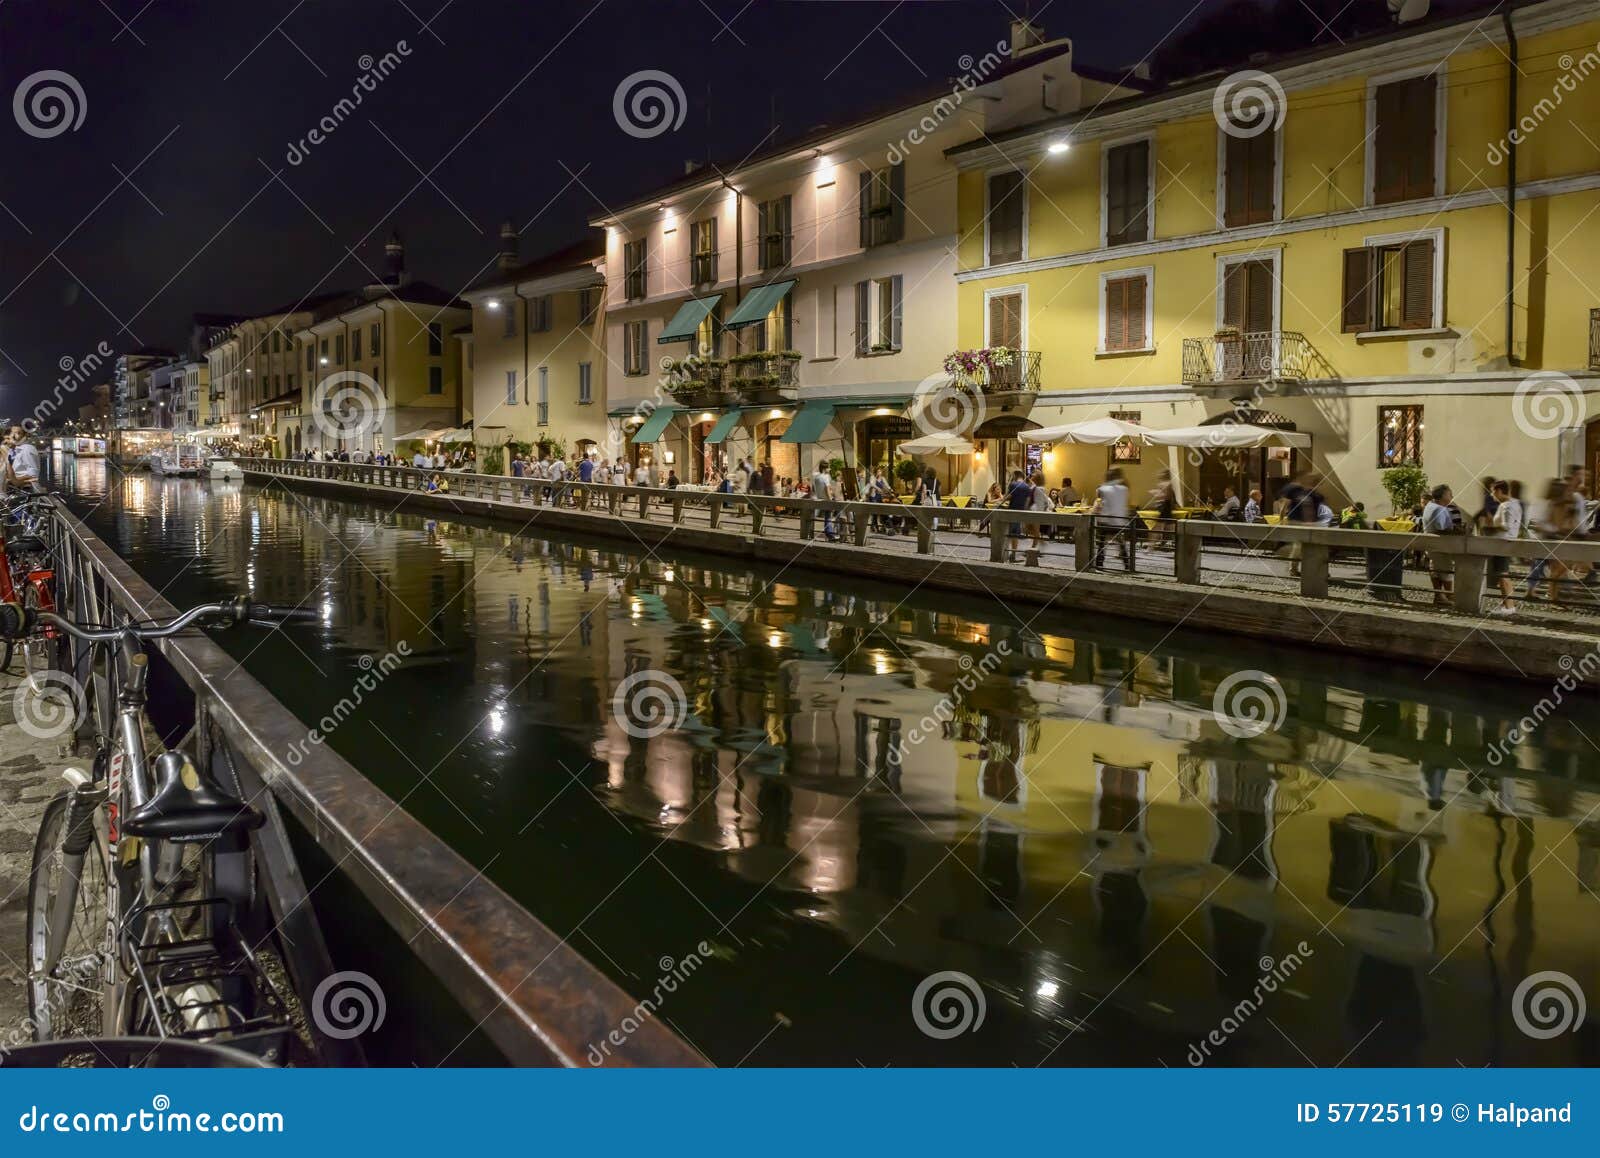 Naviglio Grande Embankment At Night Life Time Milan